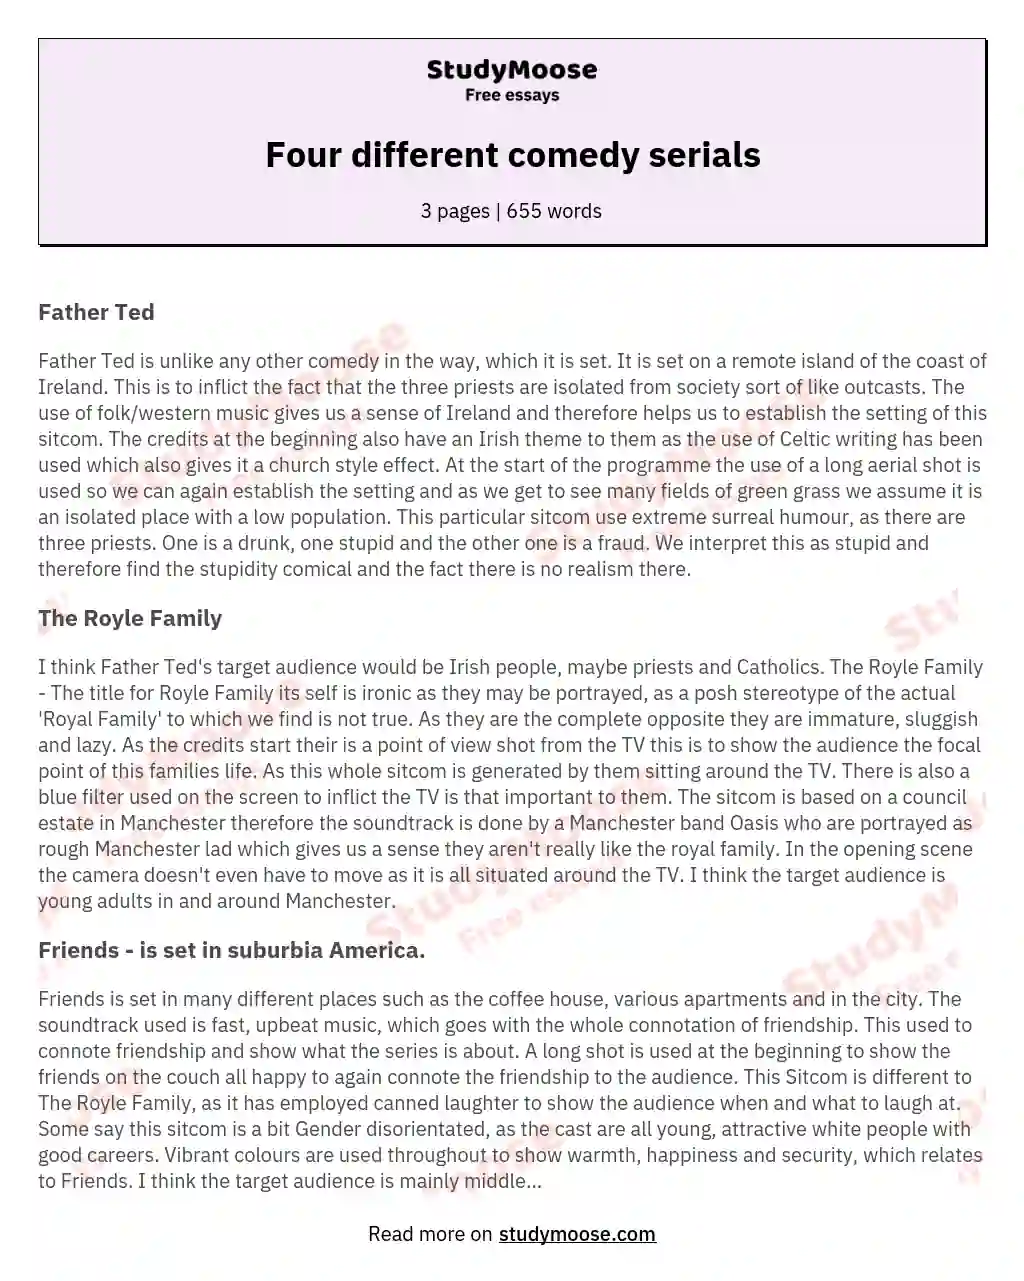 Four different comedy serials essay